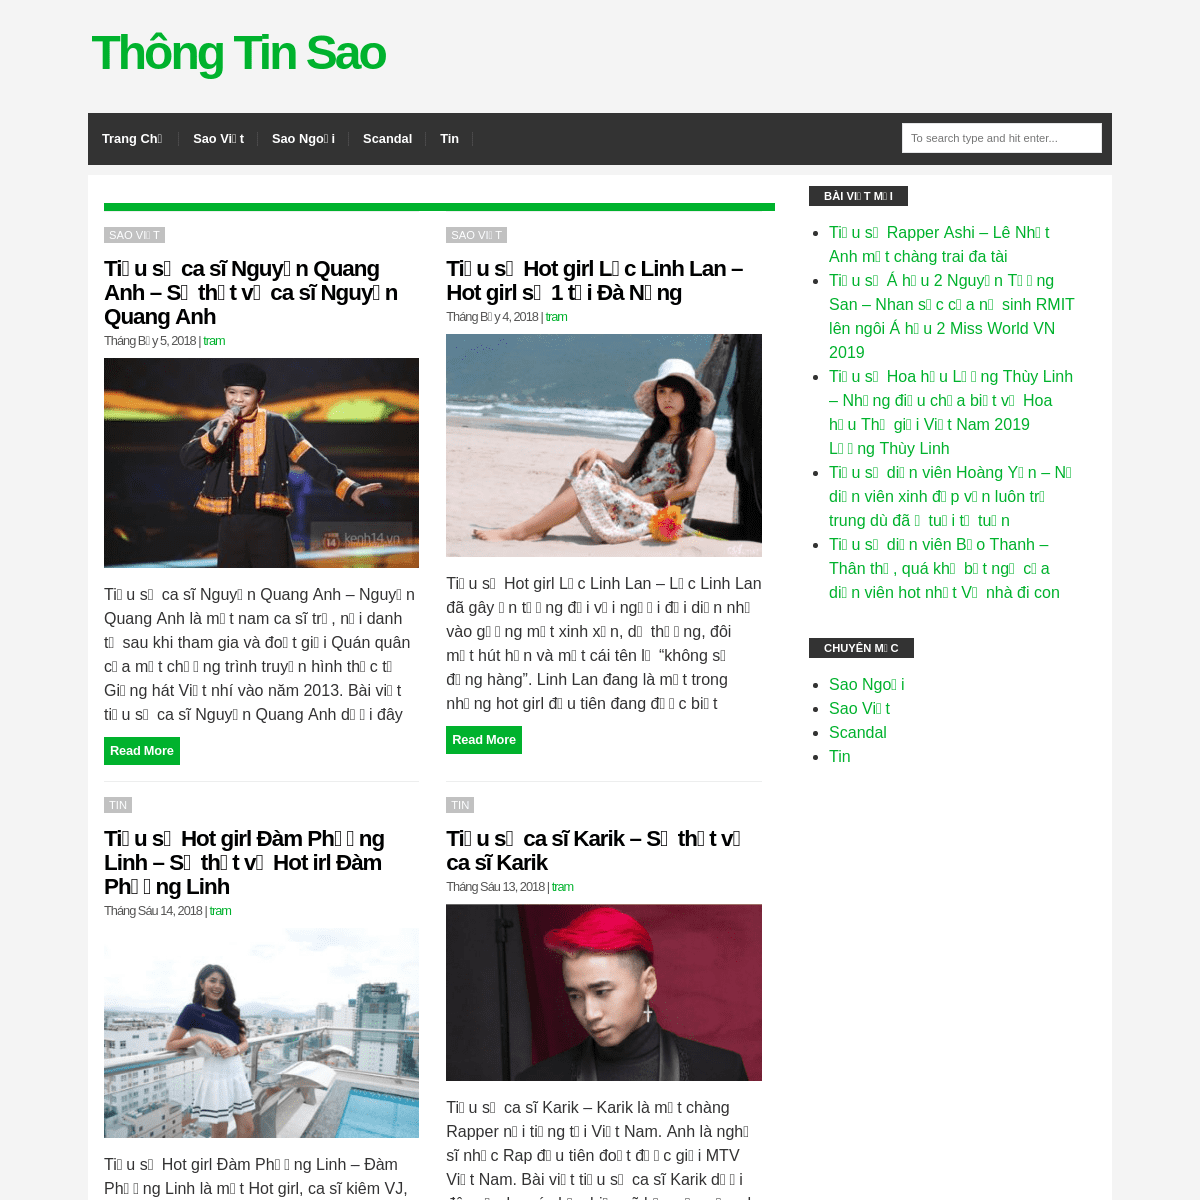 A complete backup of thongtinsao.com